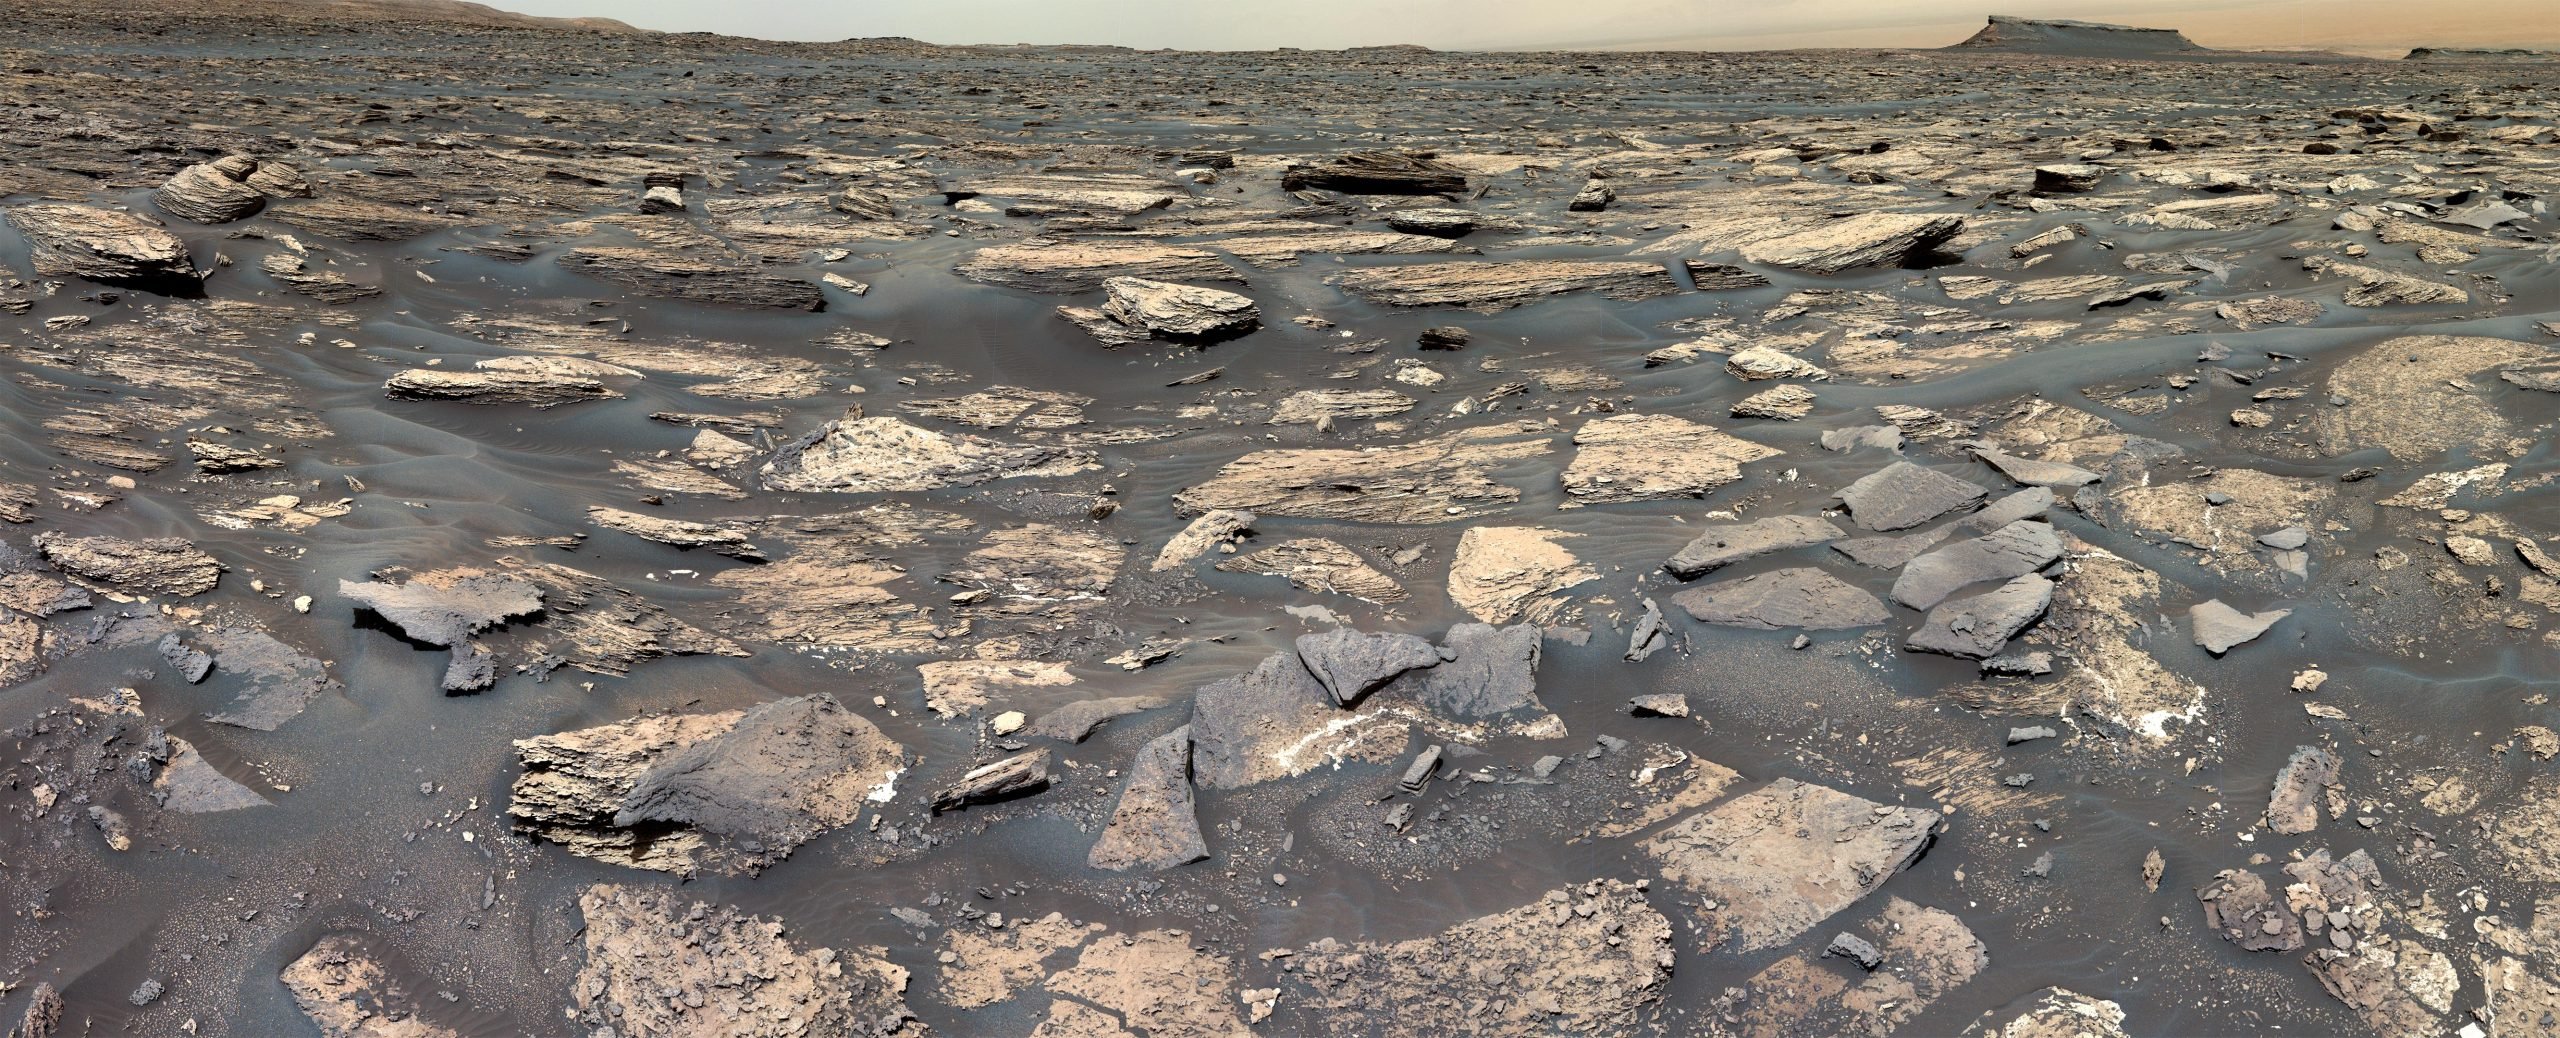 Penjelajah Curiosity NASA mengungkap tanda-tanda lingkungan mirip Bumi di Mars kuno